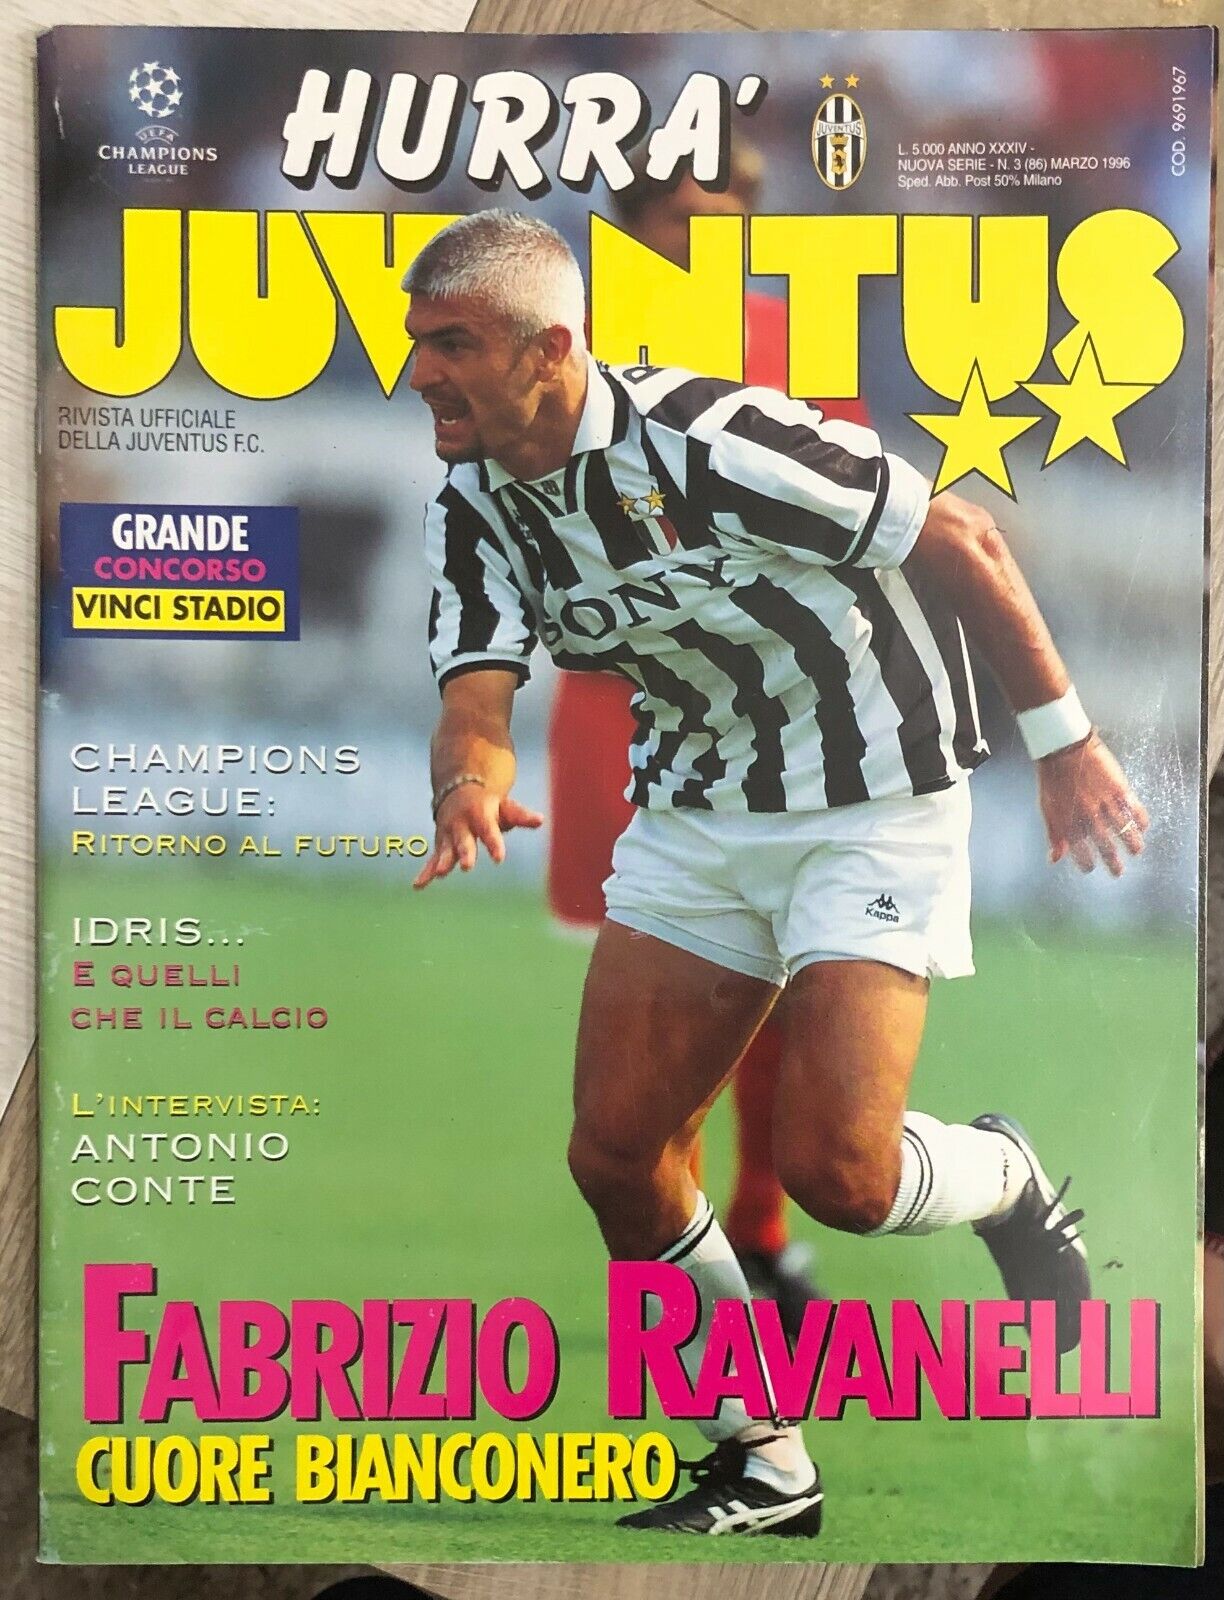 Hurr? Juventus n. 3/1996 di Aa.vv.,  1996,  Juventus F.c.